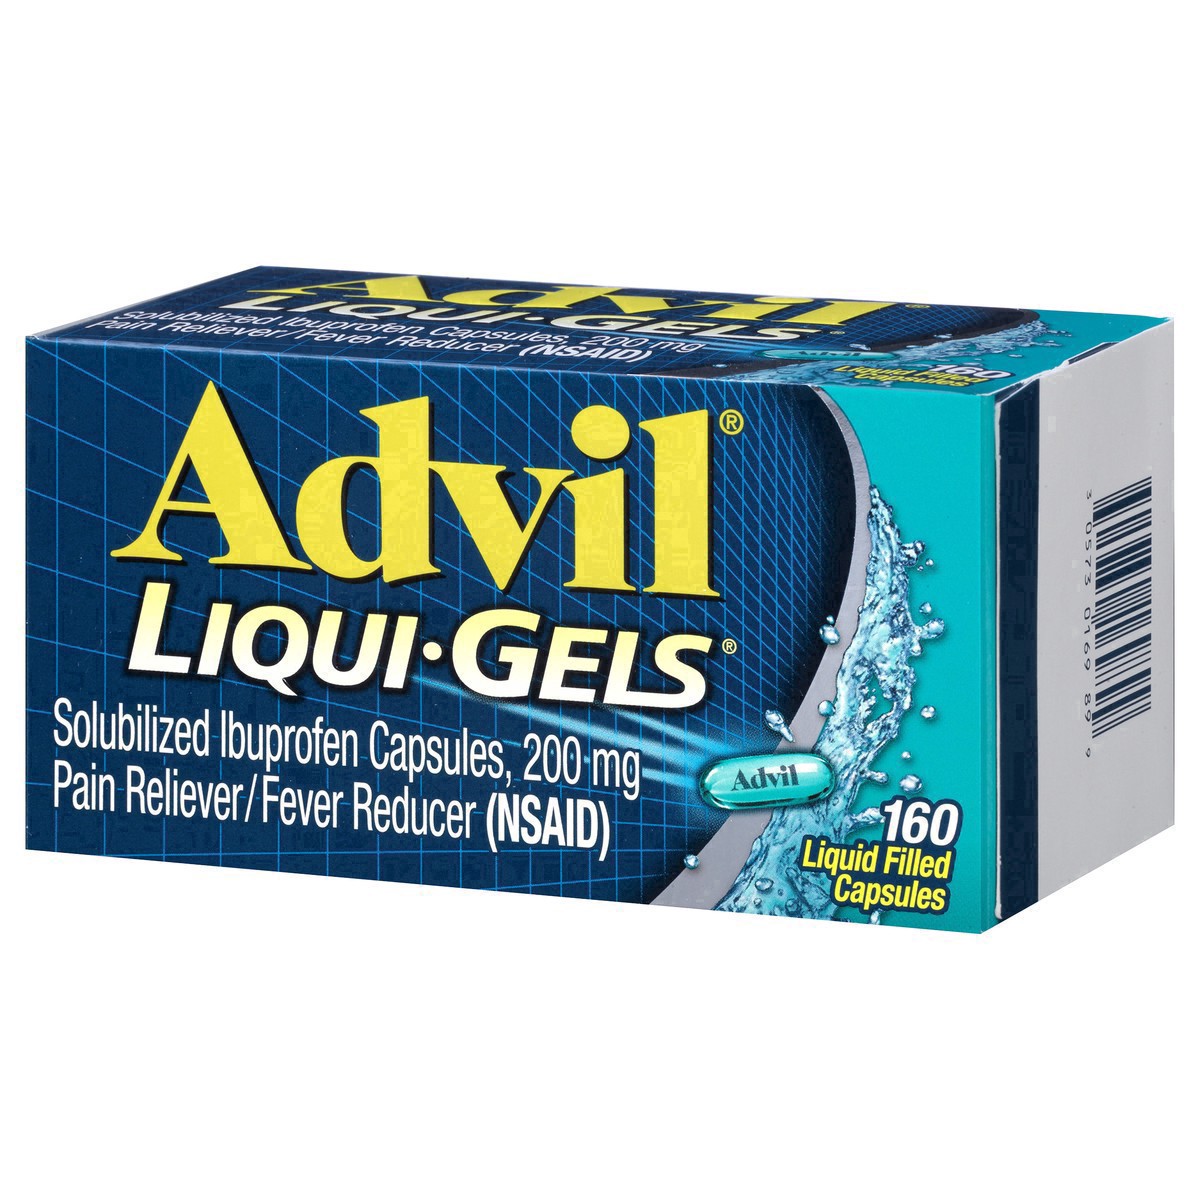 slide 10 of 18, Advil Pain Reliever/Fever Reducer Liqui-Gels Capsules - Ibuprofen (NSAID), 160 ct